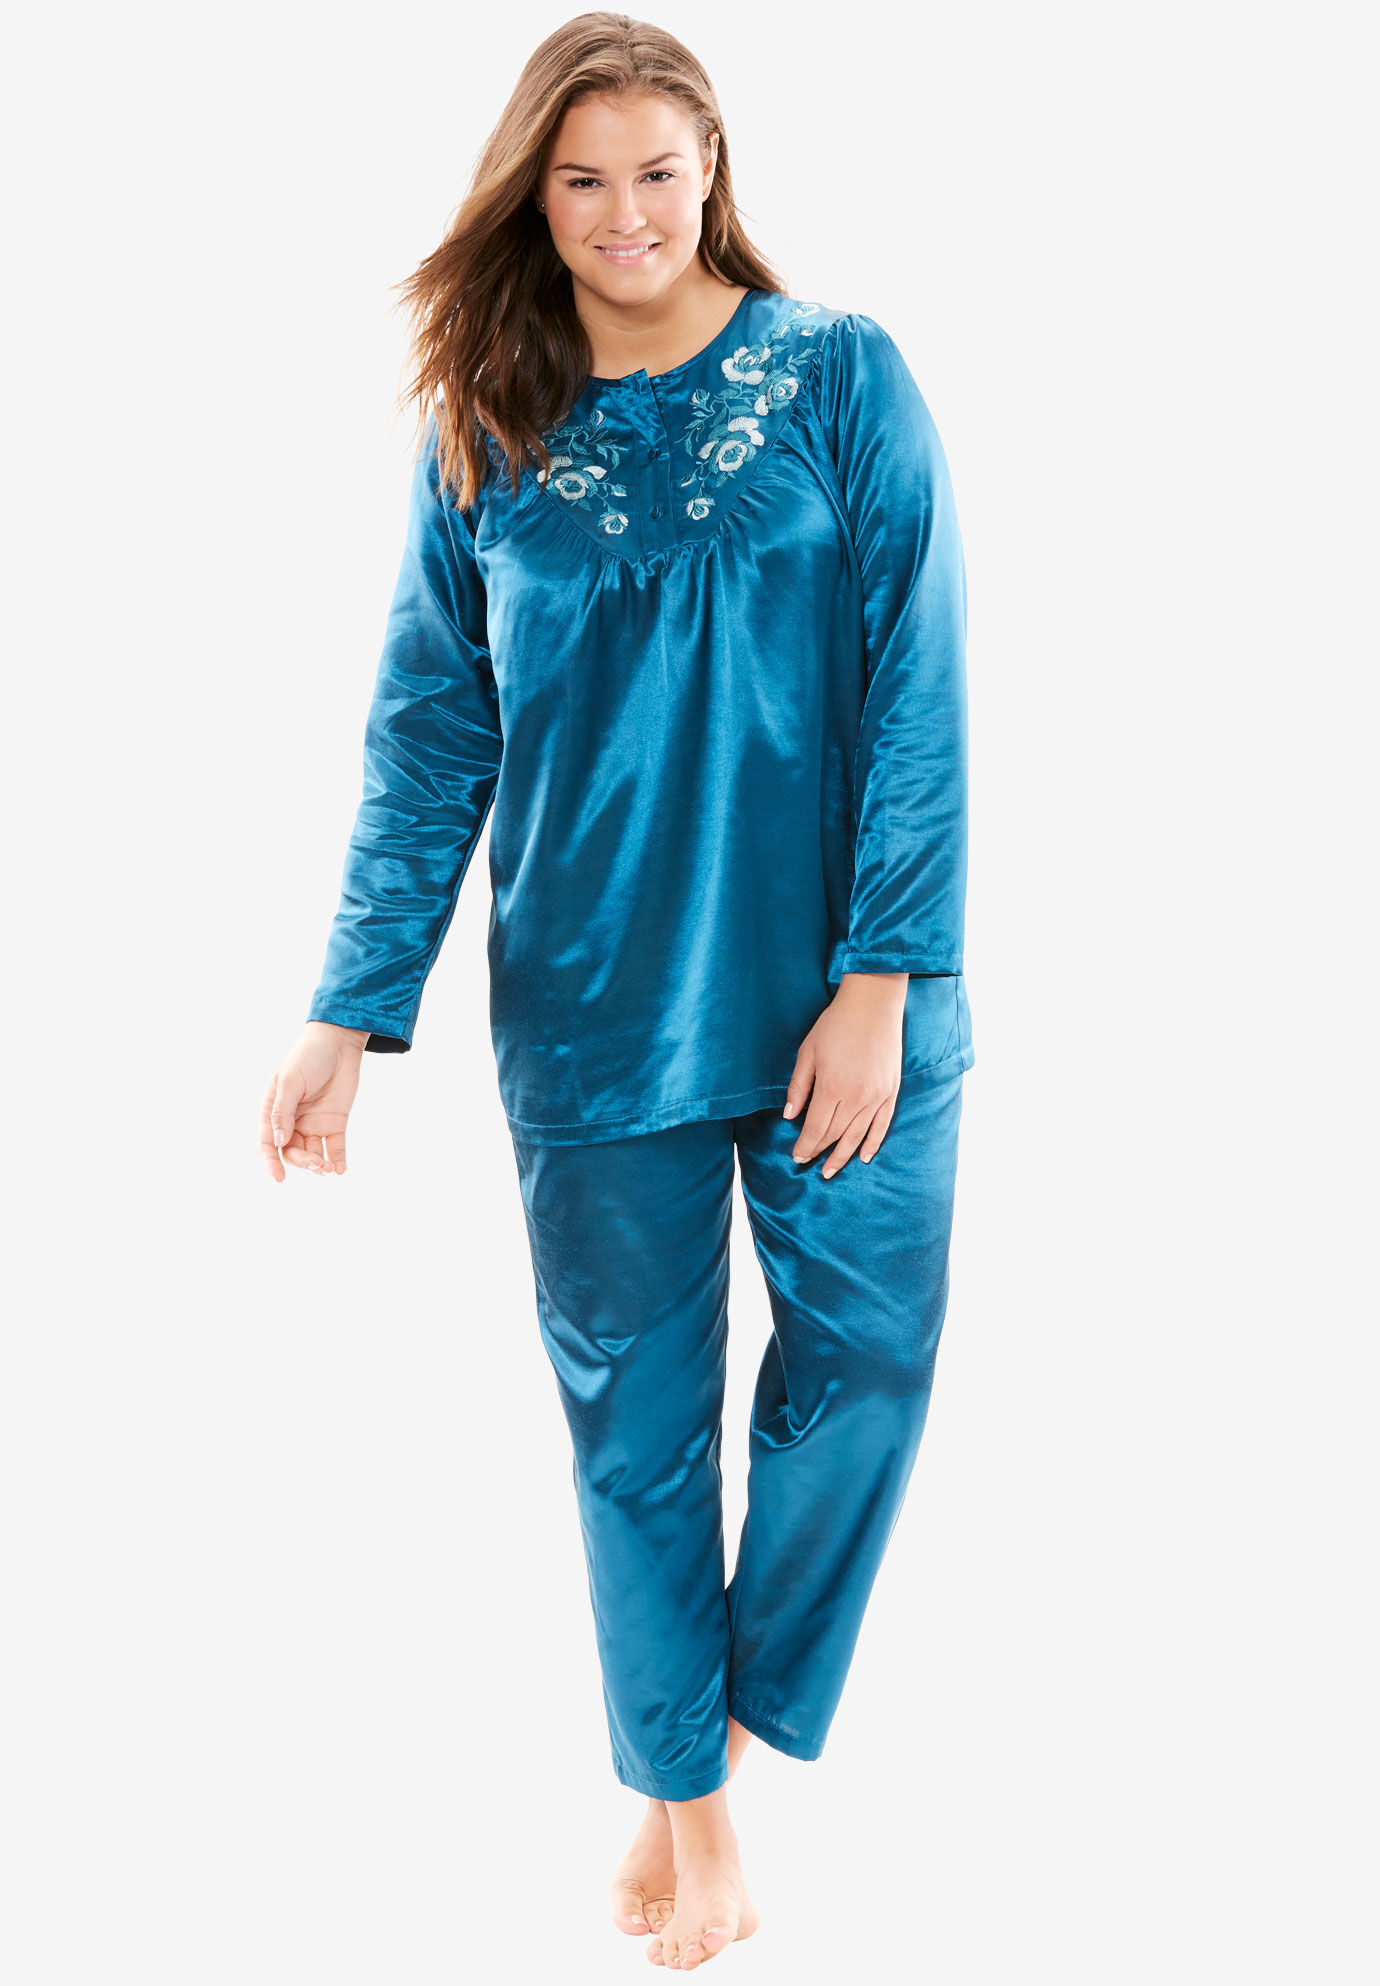 Turquoise Color Satin Unisex Lounge Sleep Pajama Pants Adult Women Sissy Maid 